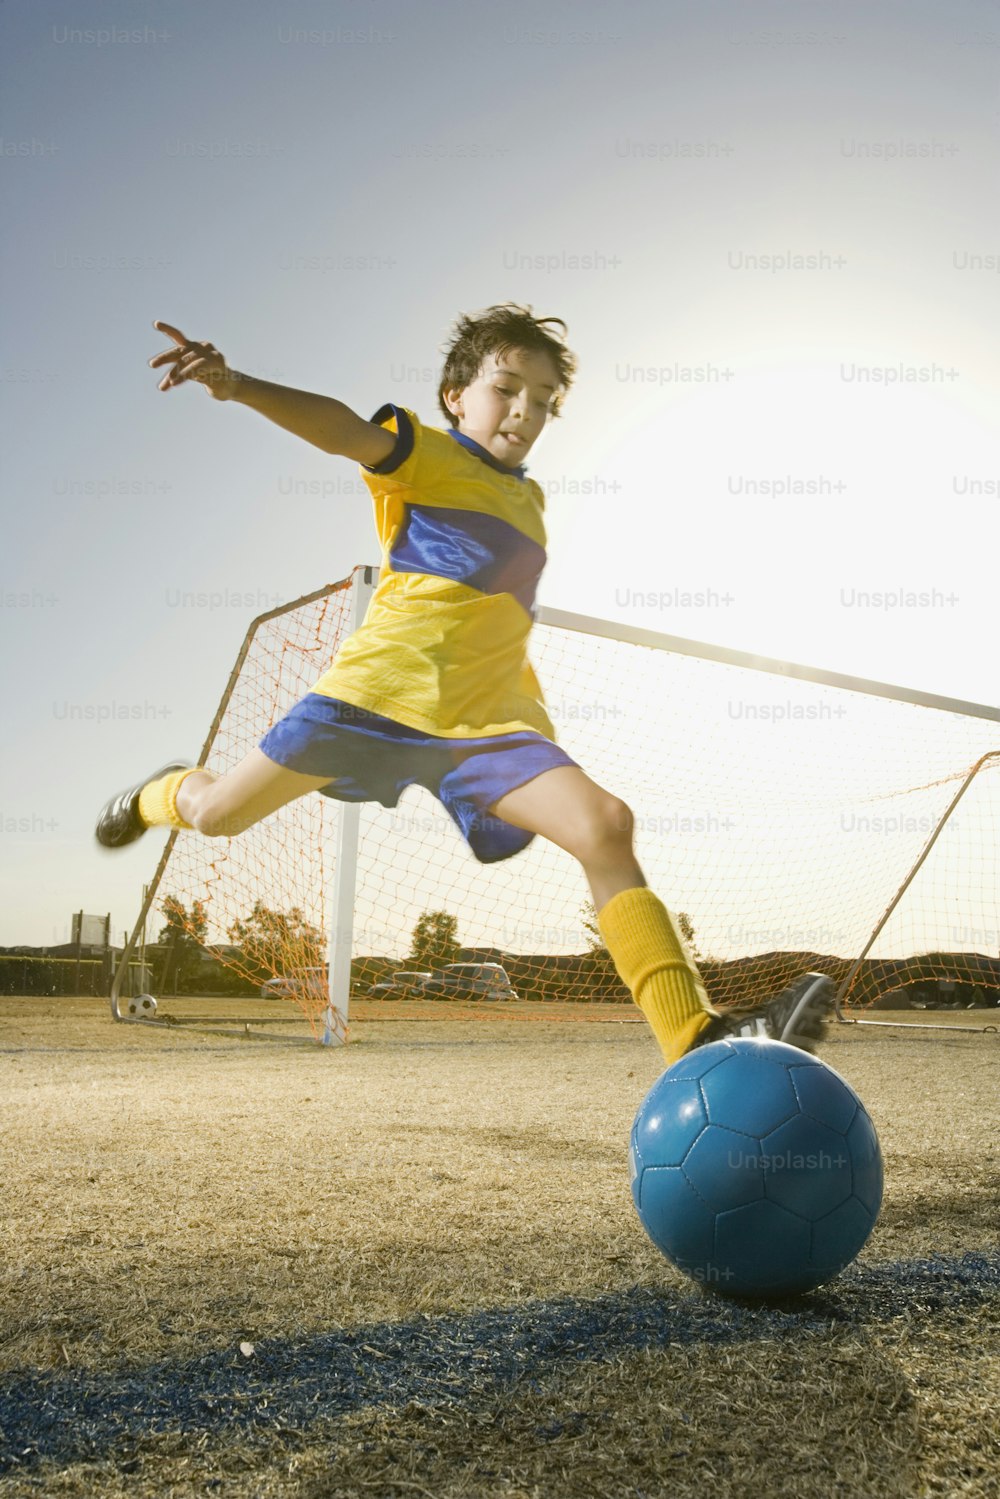 Un joven pateando una pelota de fútbol alrededor de un campo